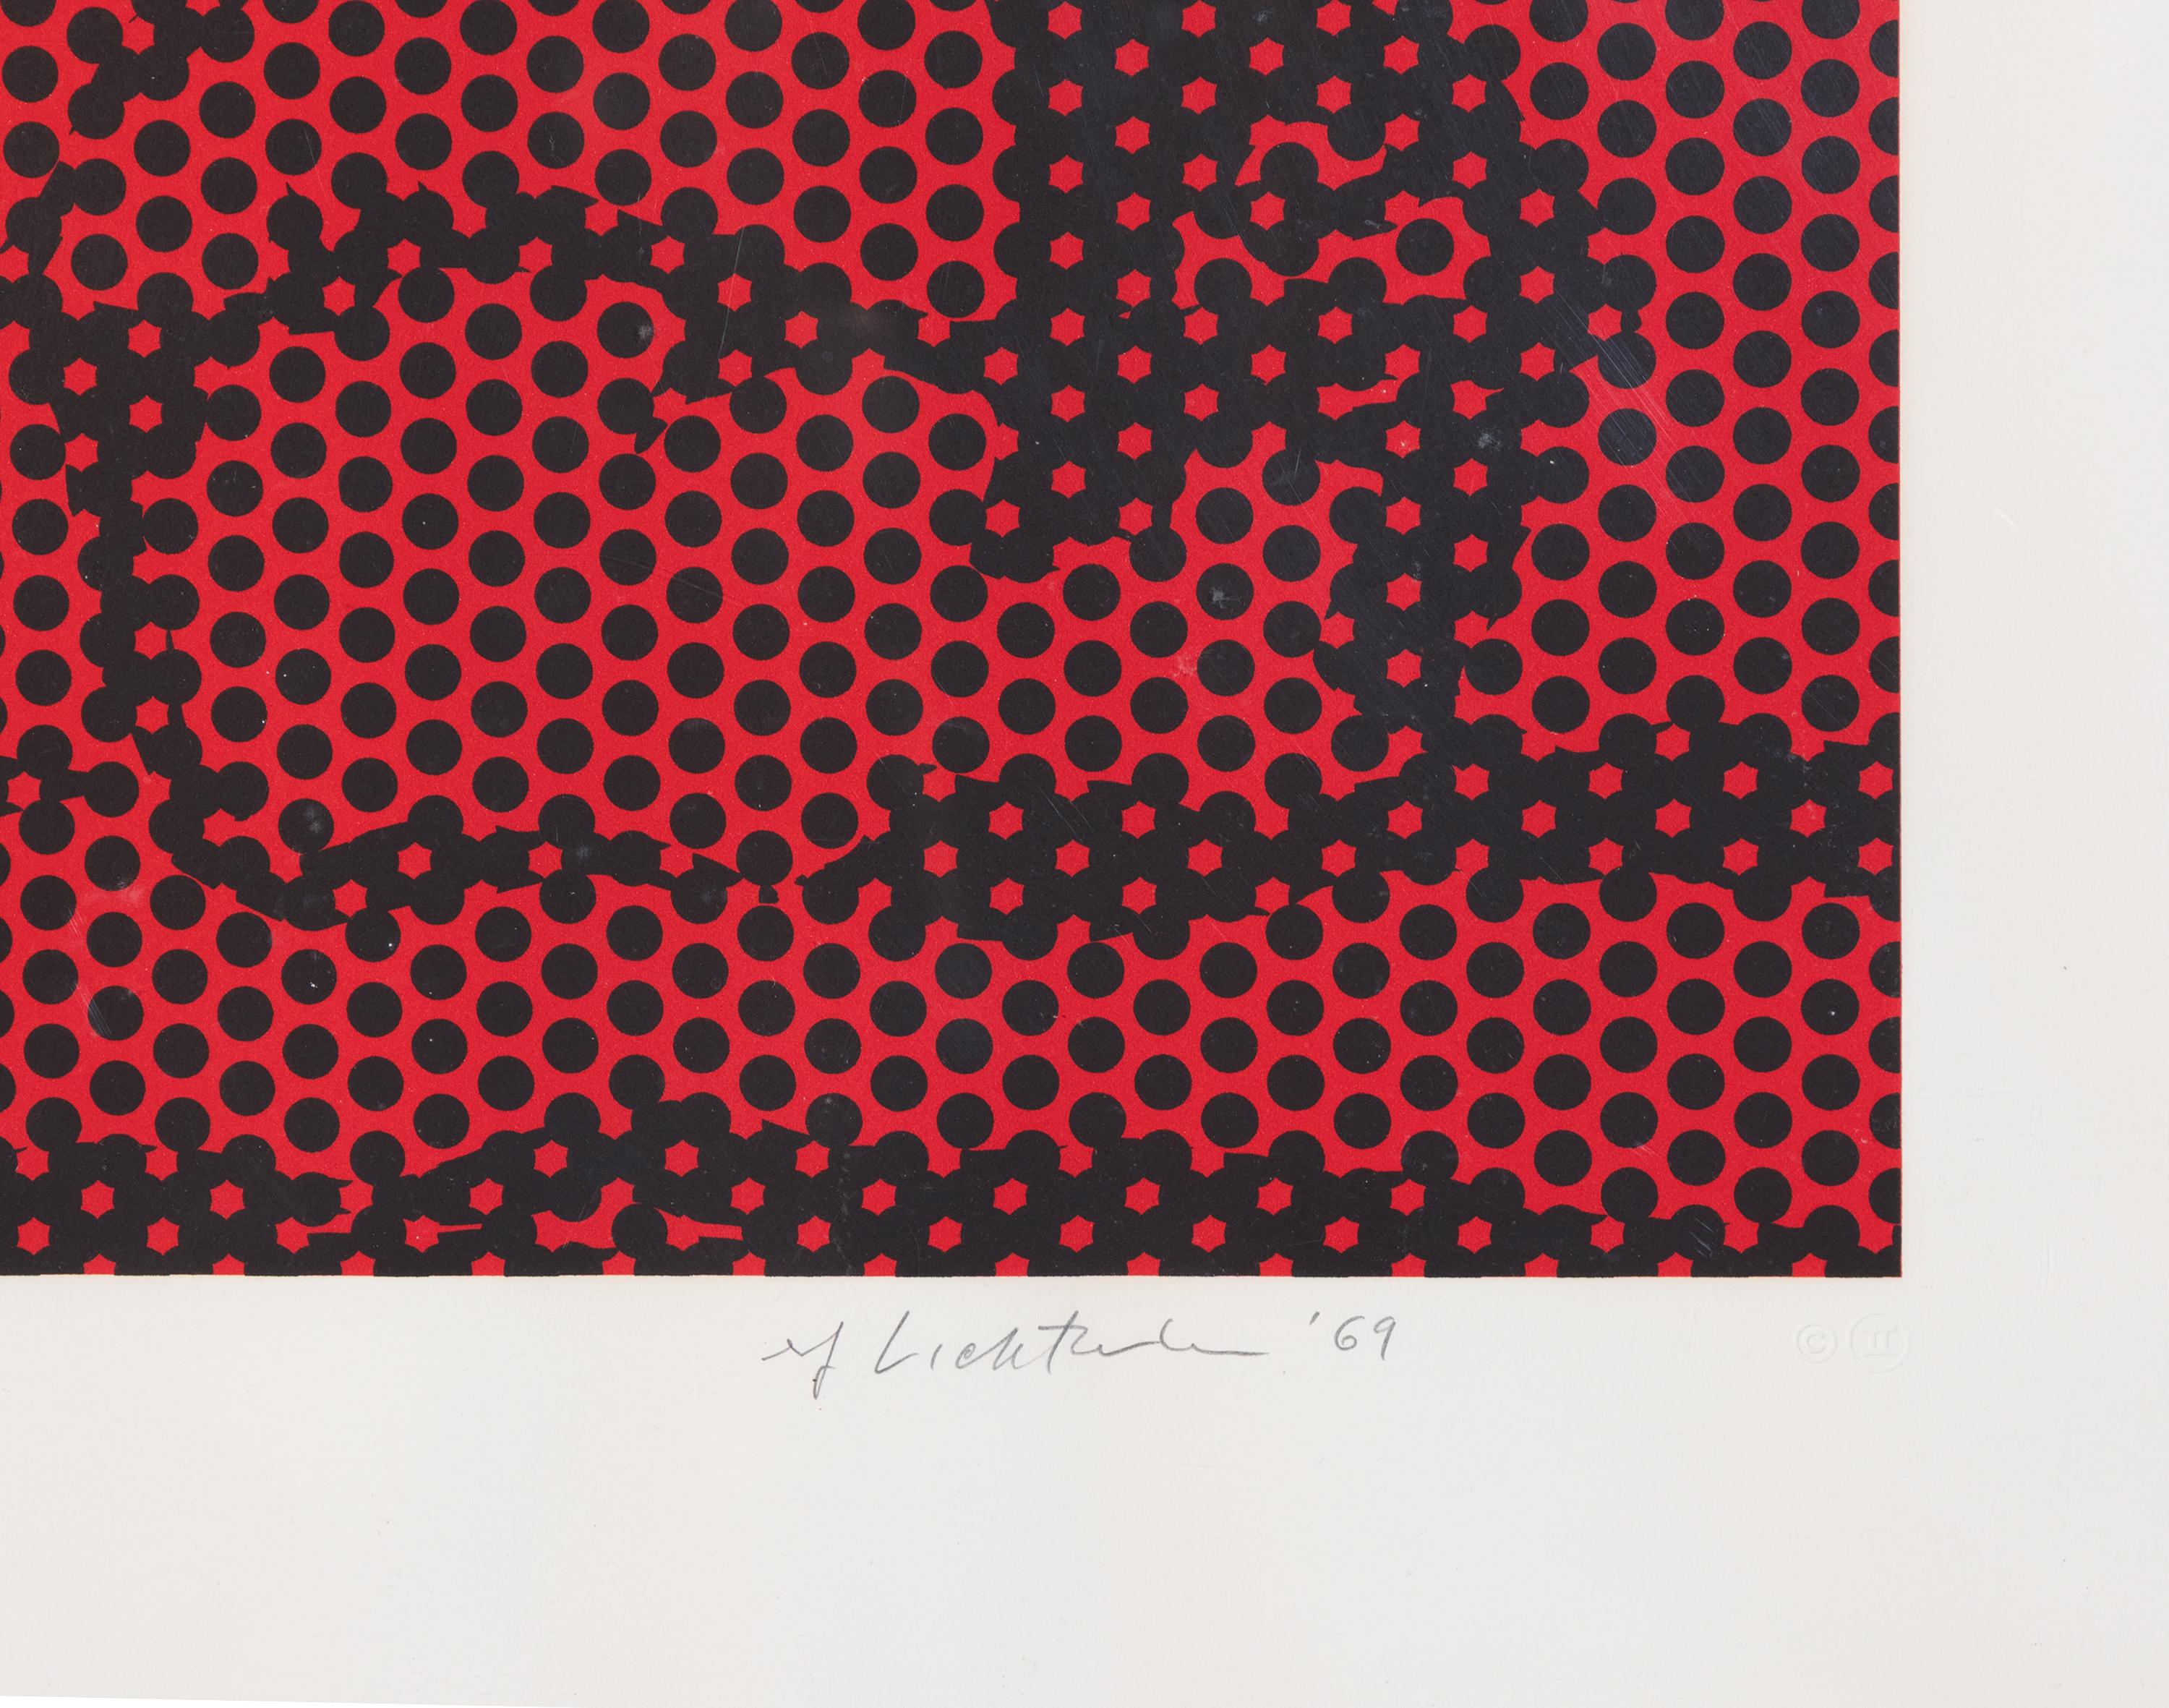 Haystack #6, RL69-236 - Brown Abstract Print by Roy Lichtenstein